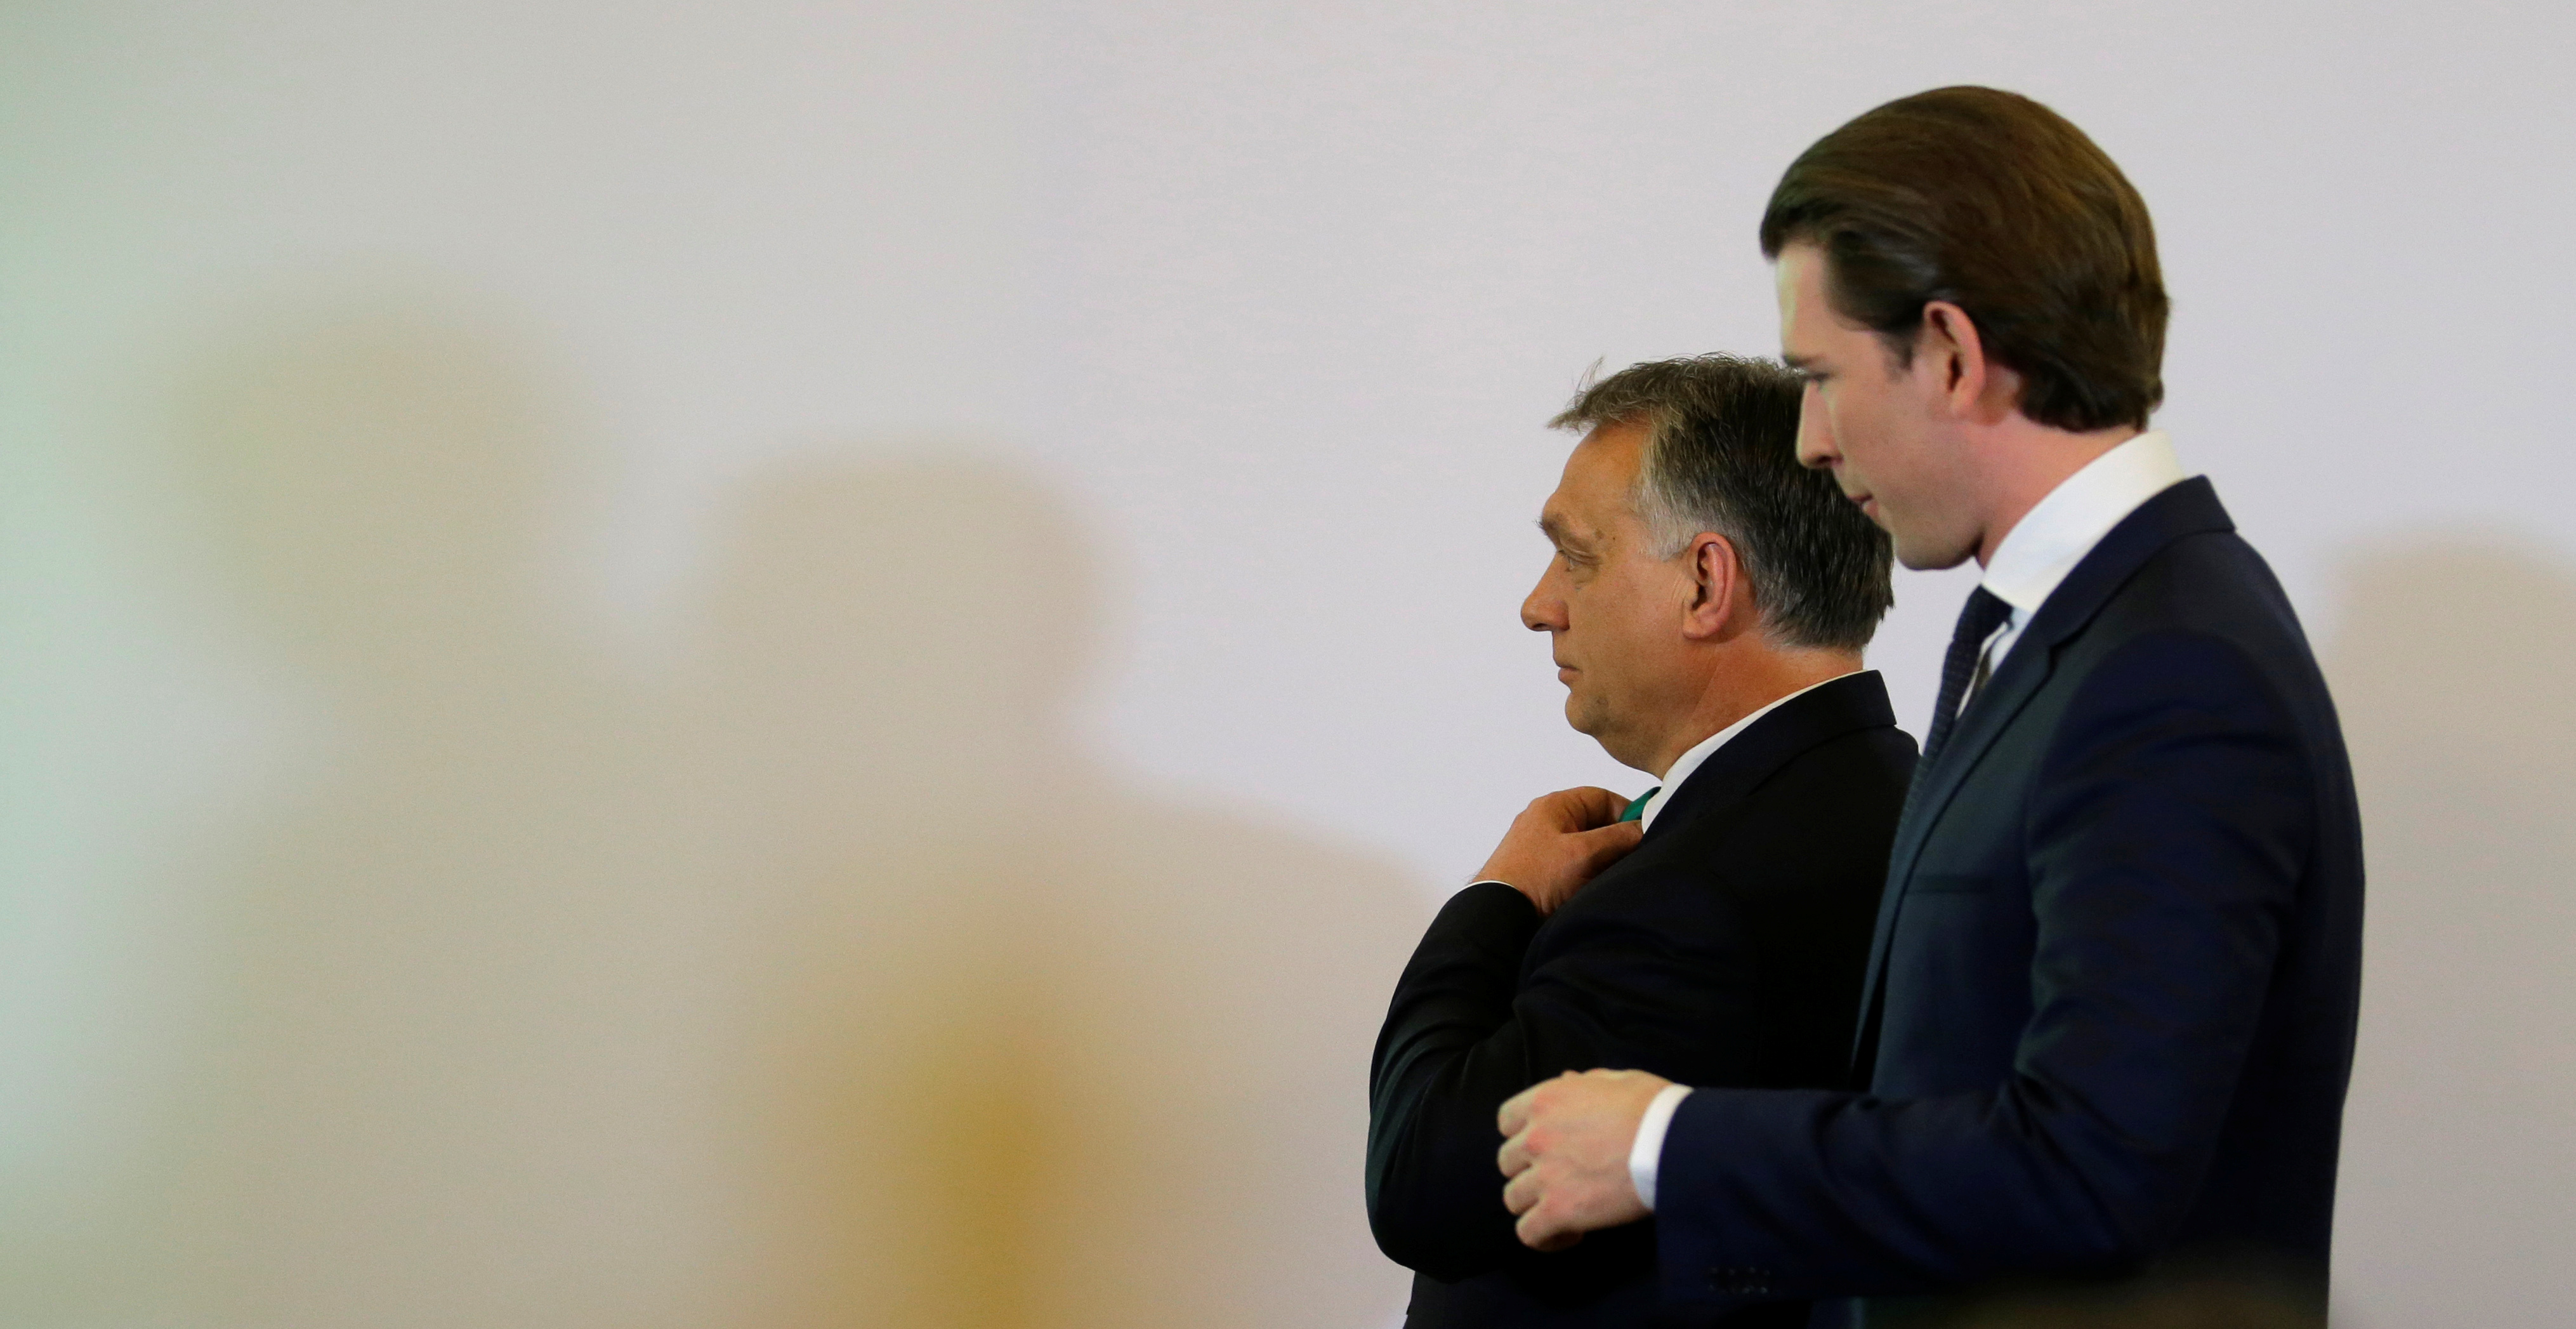 Mélypontnak tartják, hogy Kurz megvédte Orbán politikáját